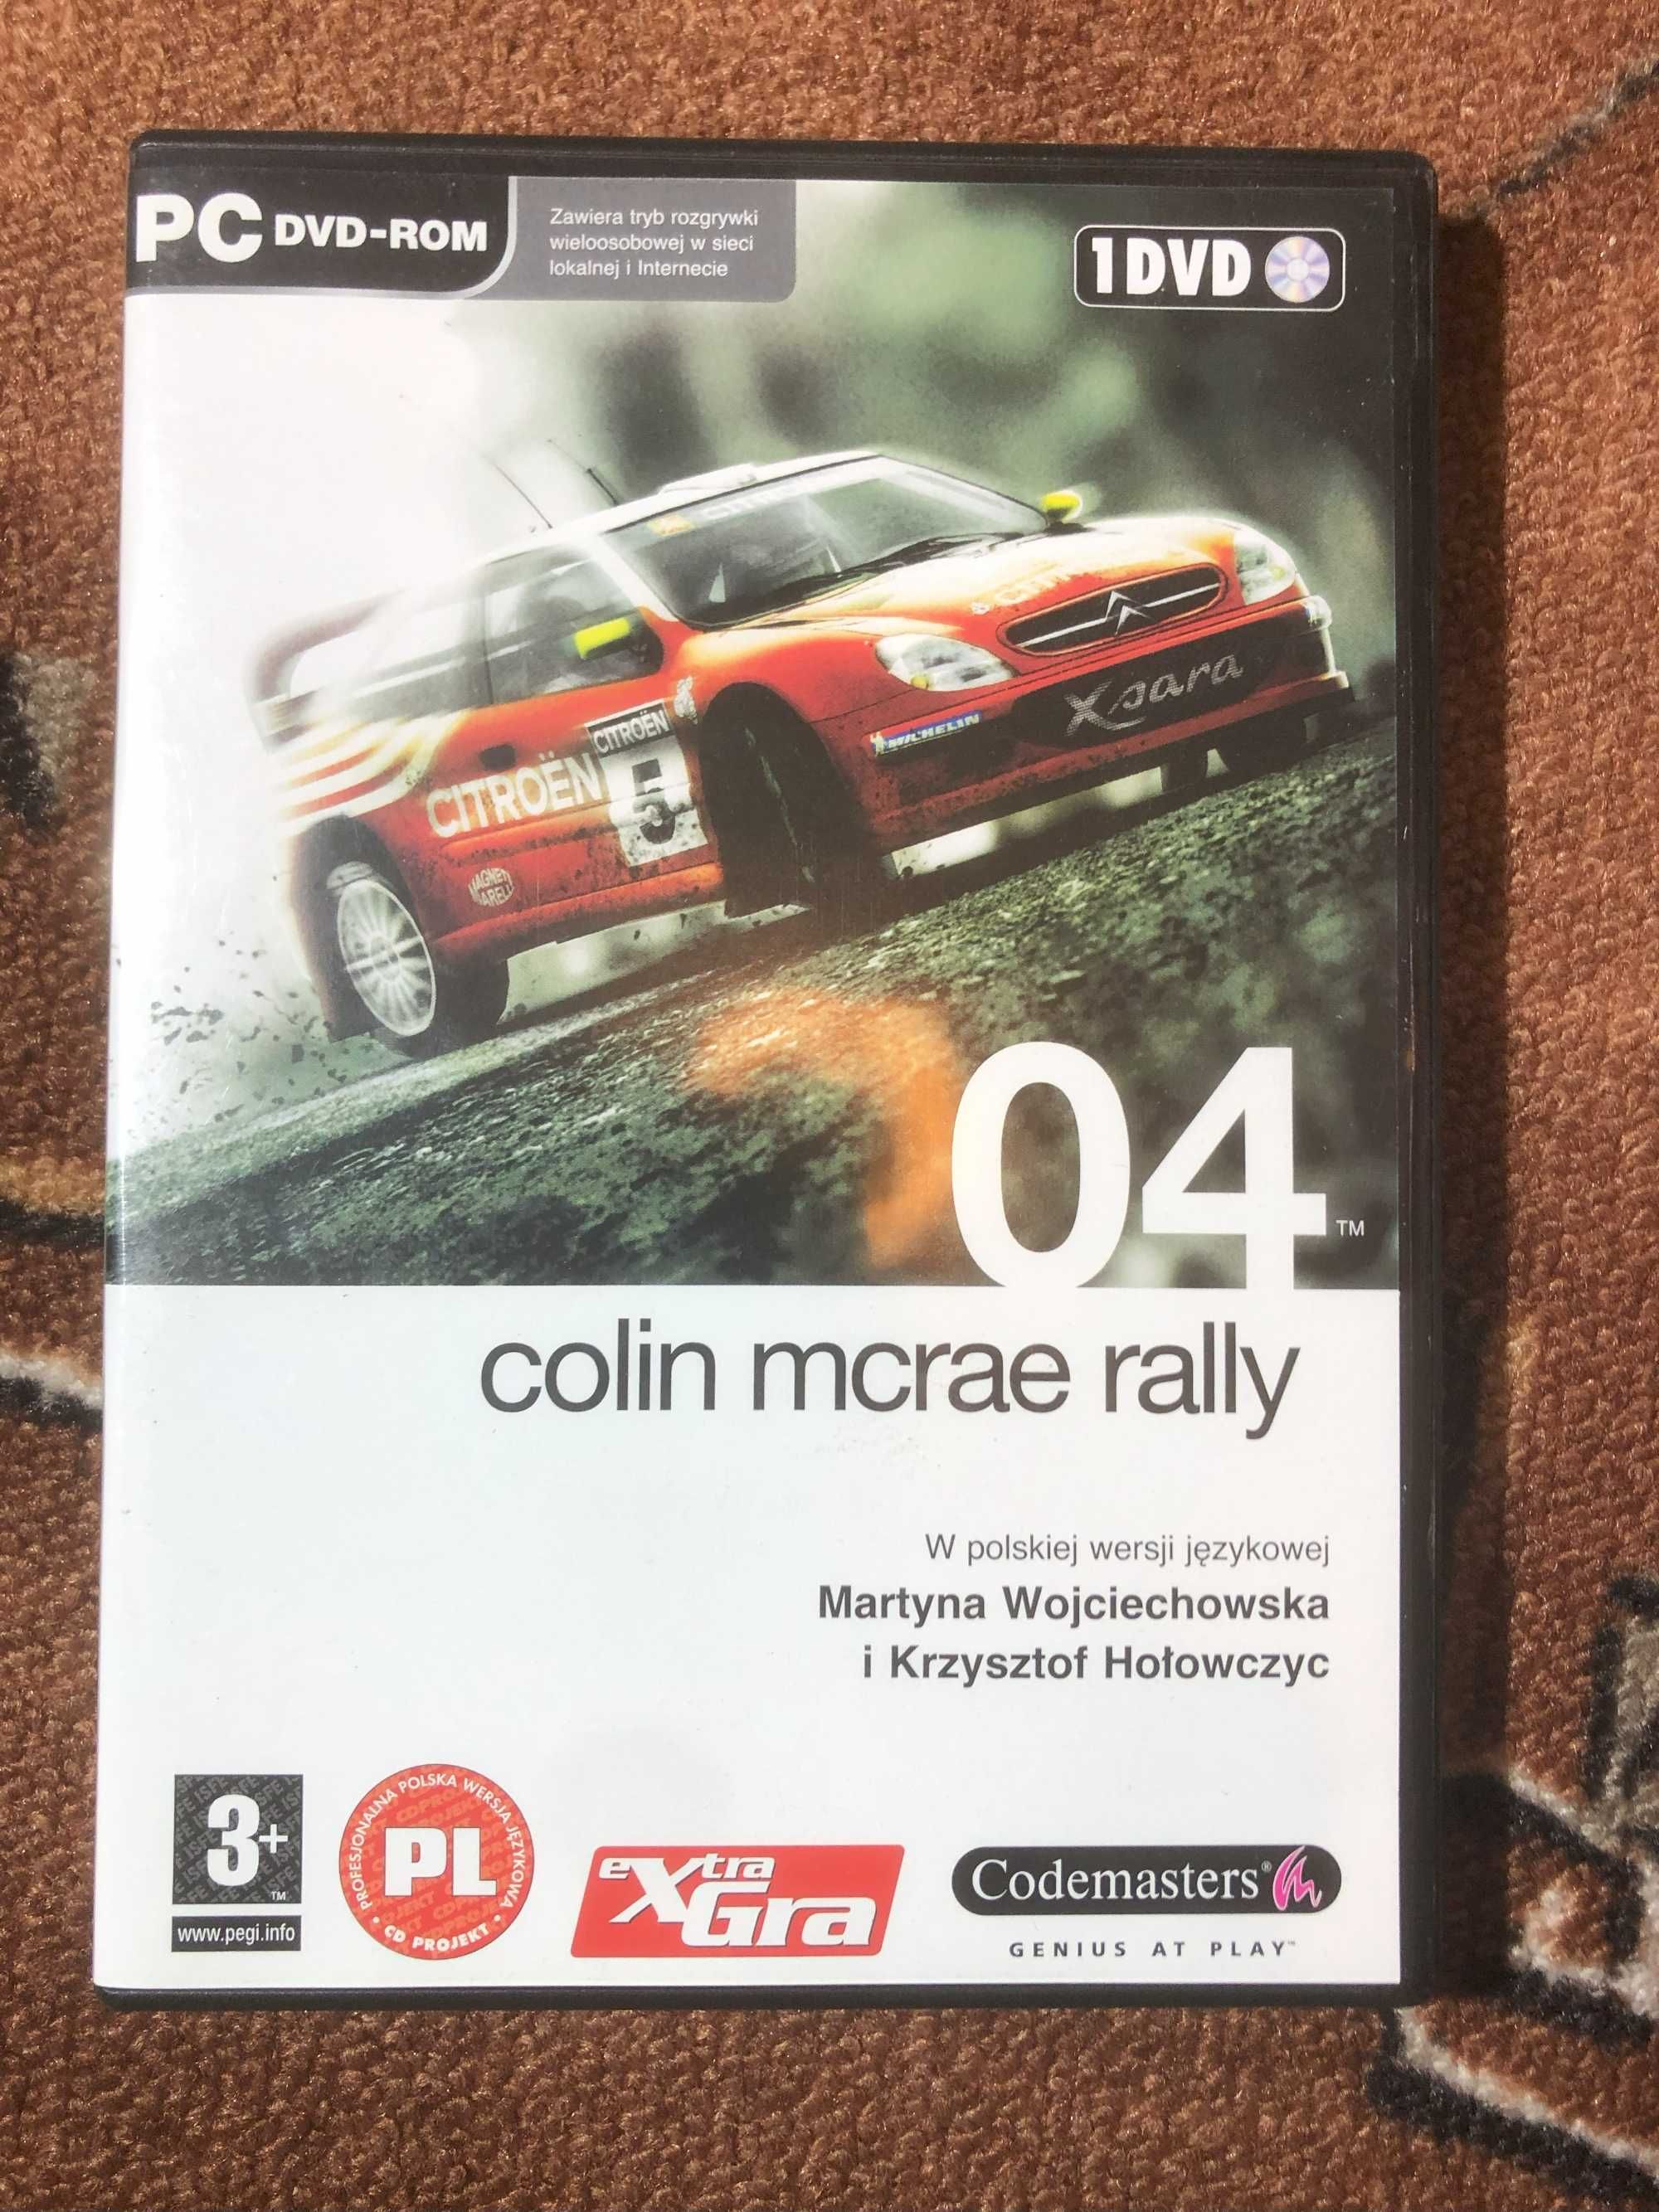 Colin McRae rally 04 PC - 1 DVD  w polskiej wersji